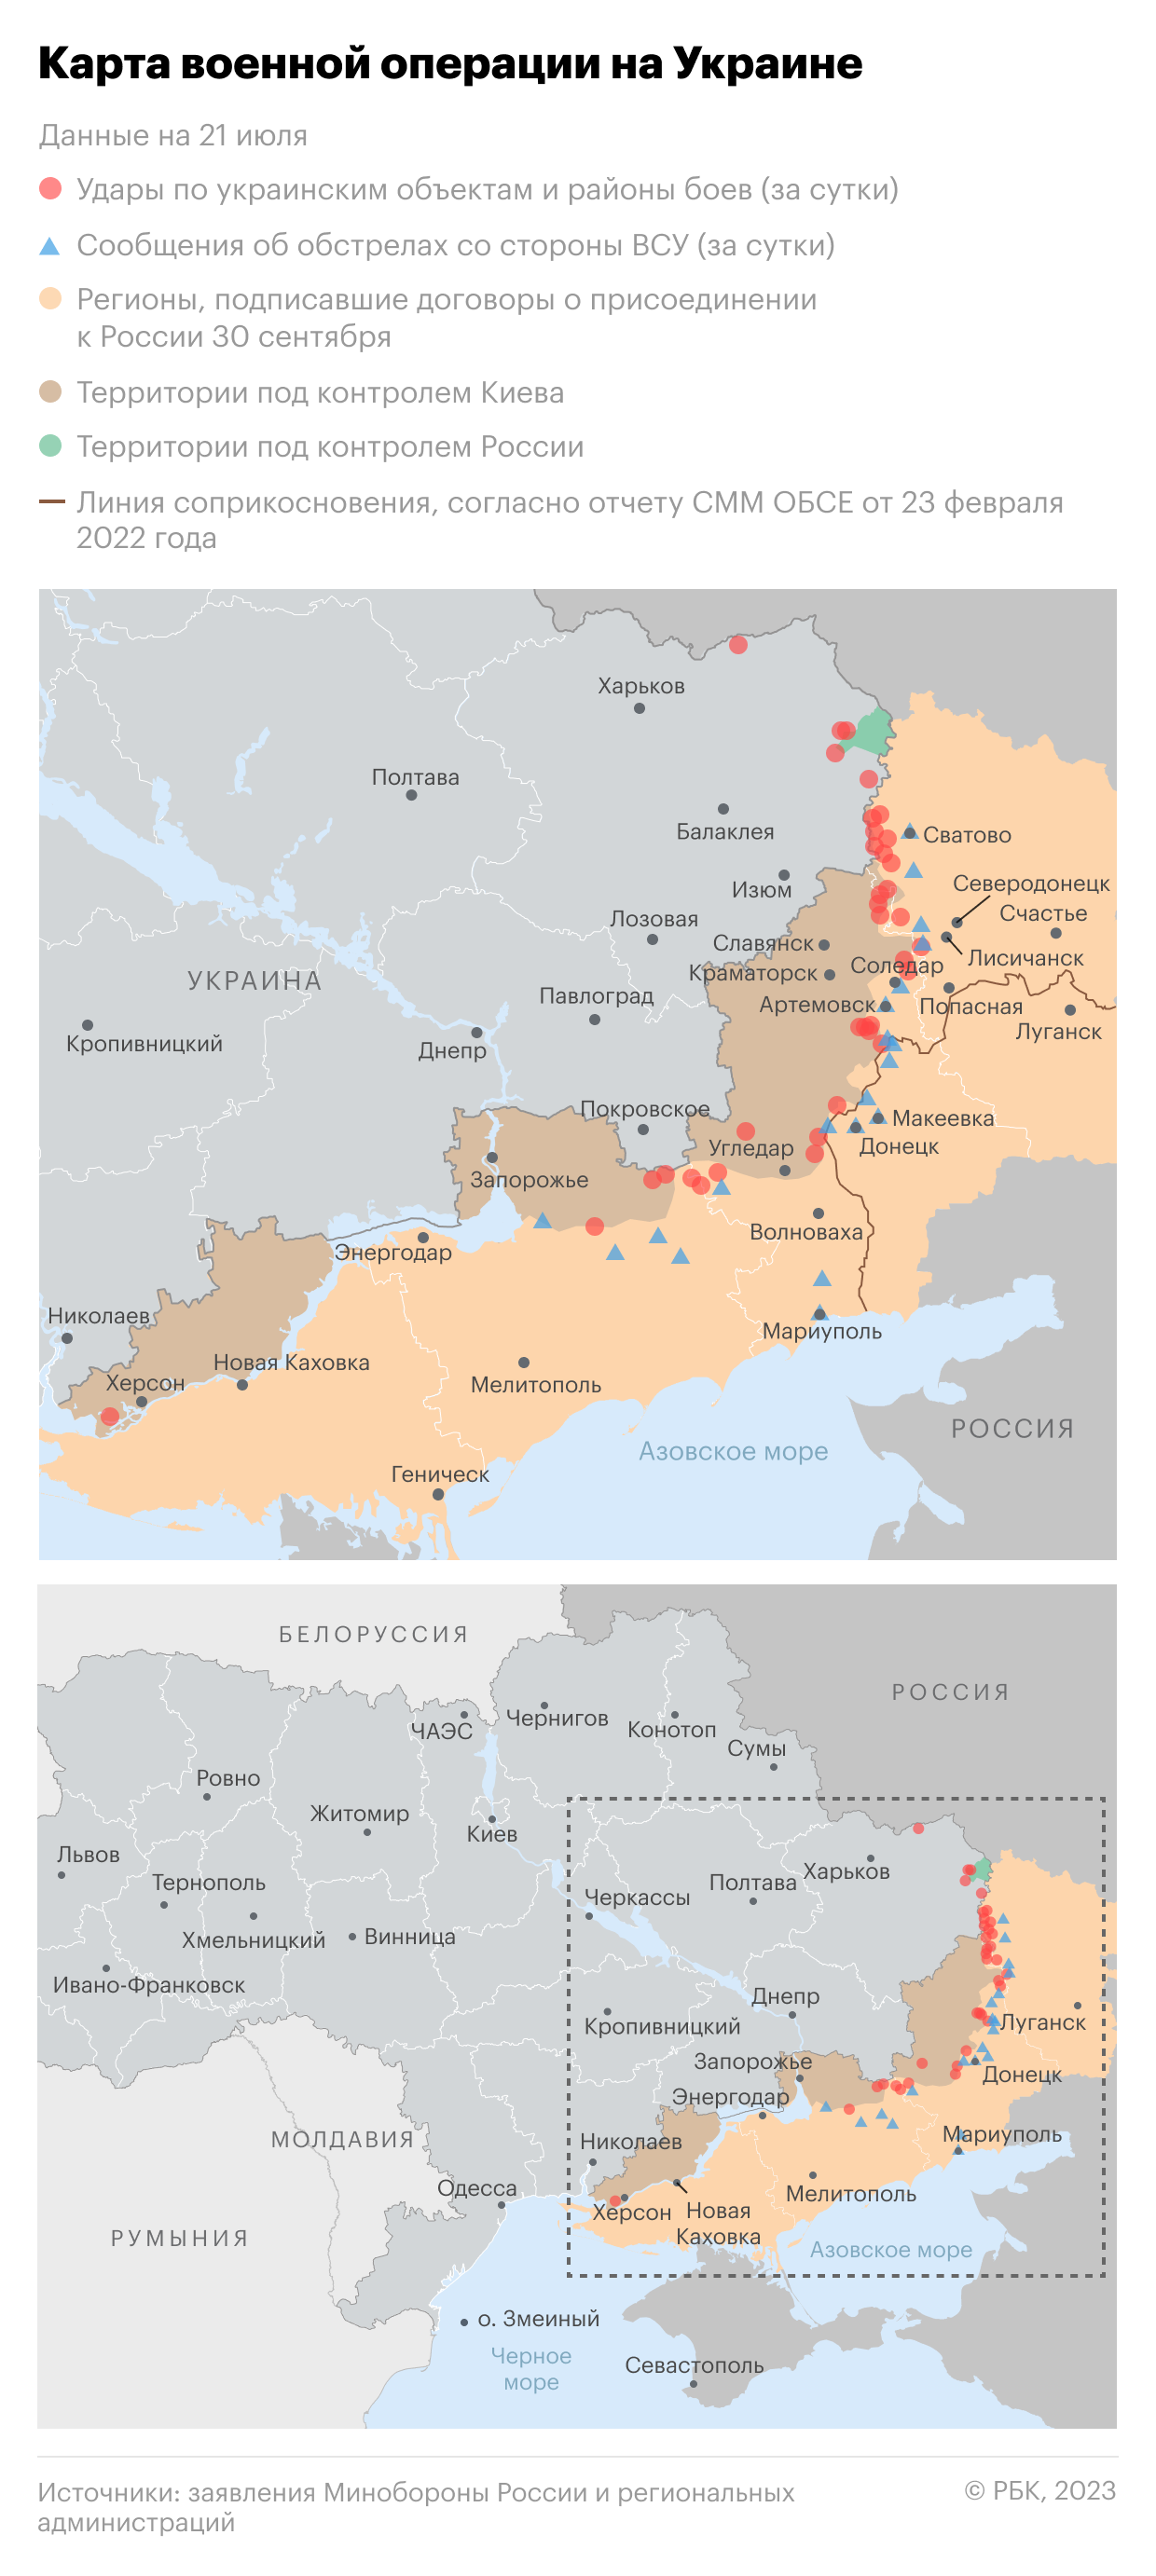 Военная операция на Украине. Карта на 21 июля"/>













